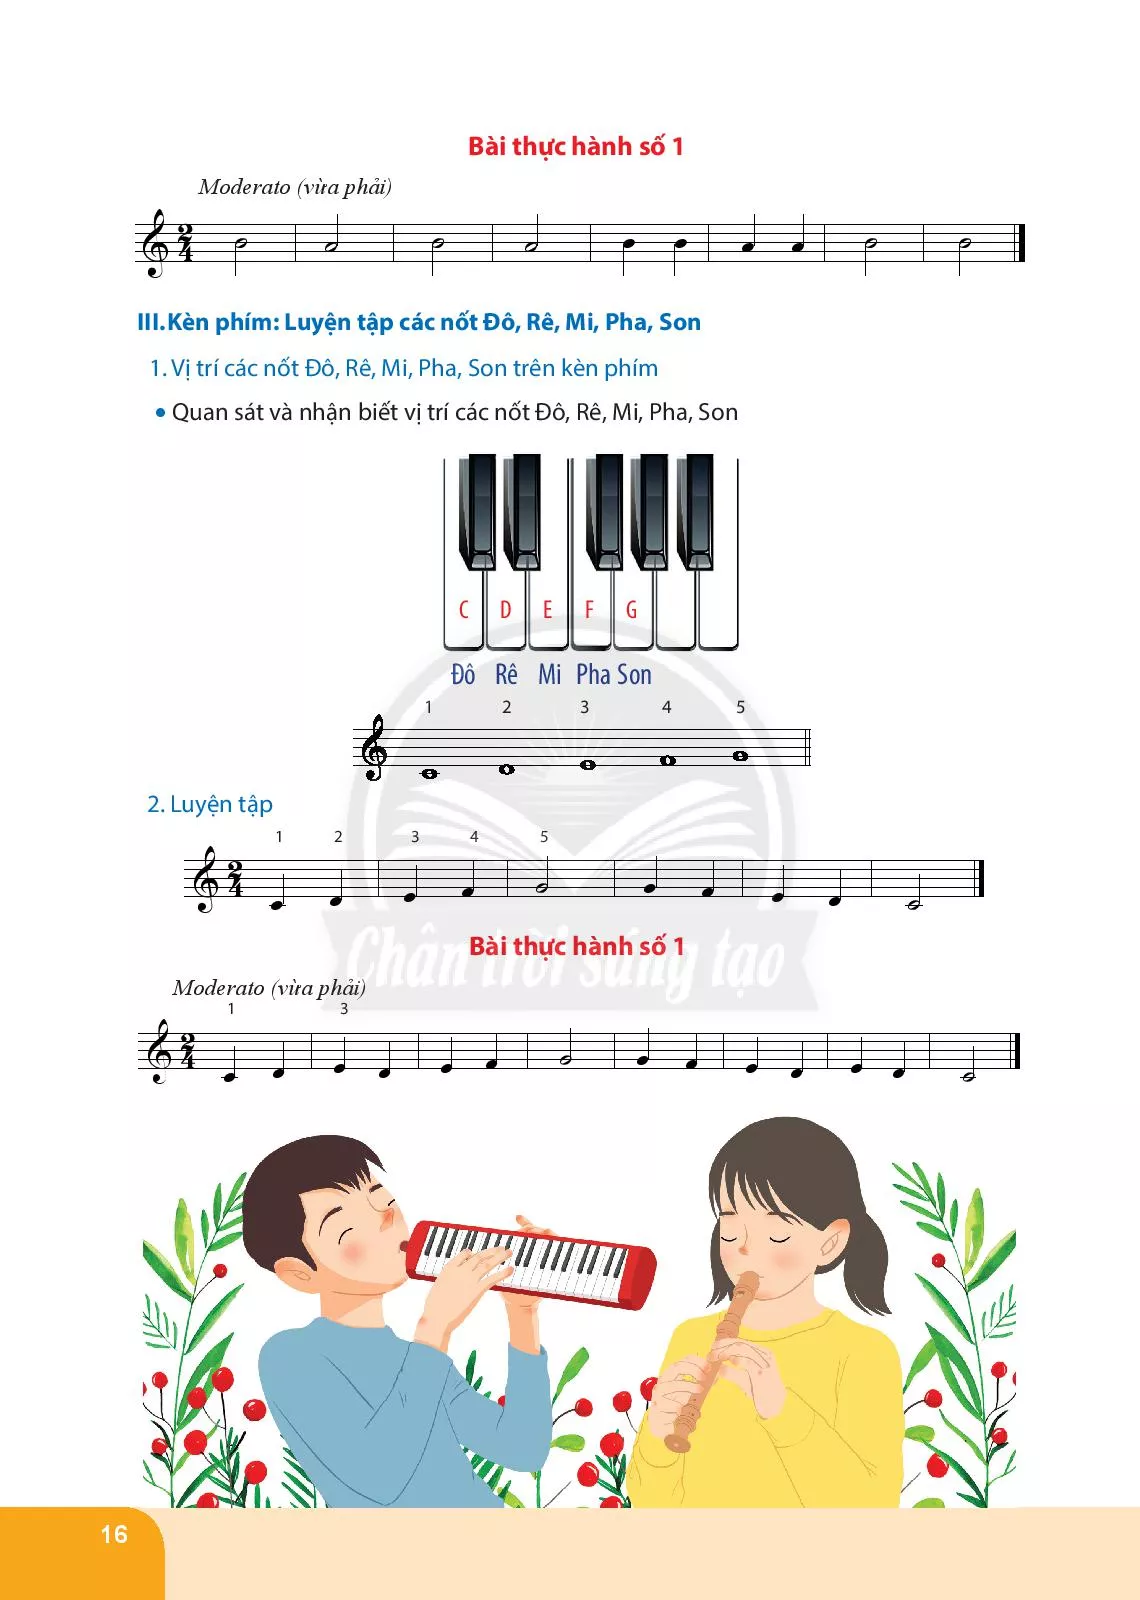 Nhạc cụ tiết tấu. Bài thực hành số 2 Nhạc cụ giai điệu: Bài thực hành số 1 nhạc cụ sáo recorder hoặc kèn phím 